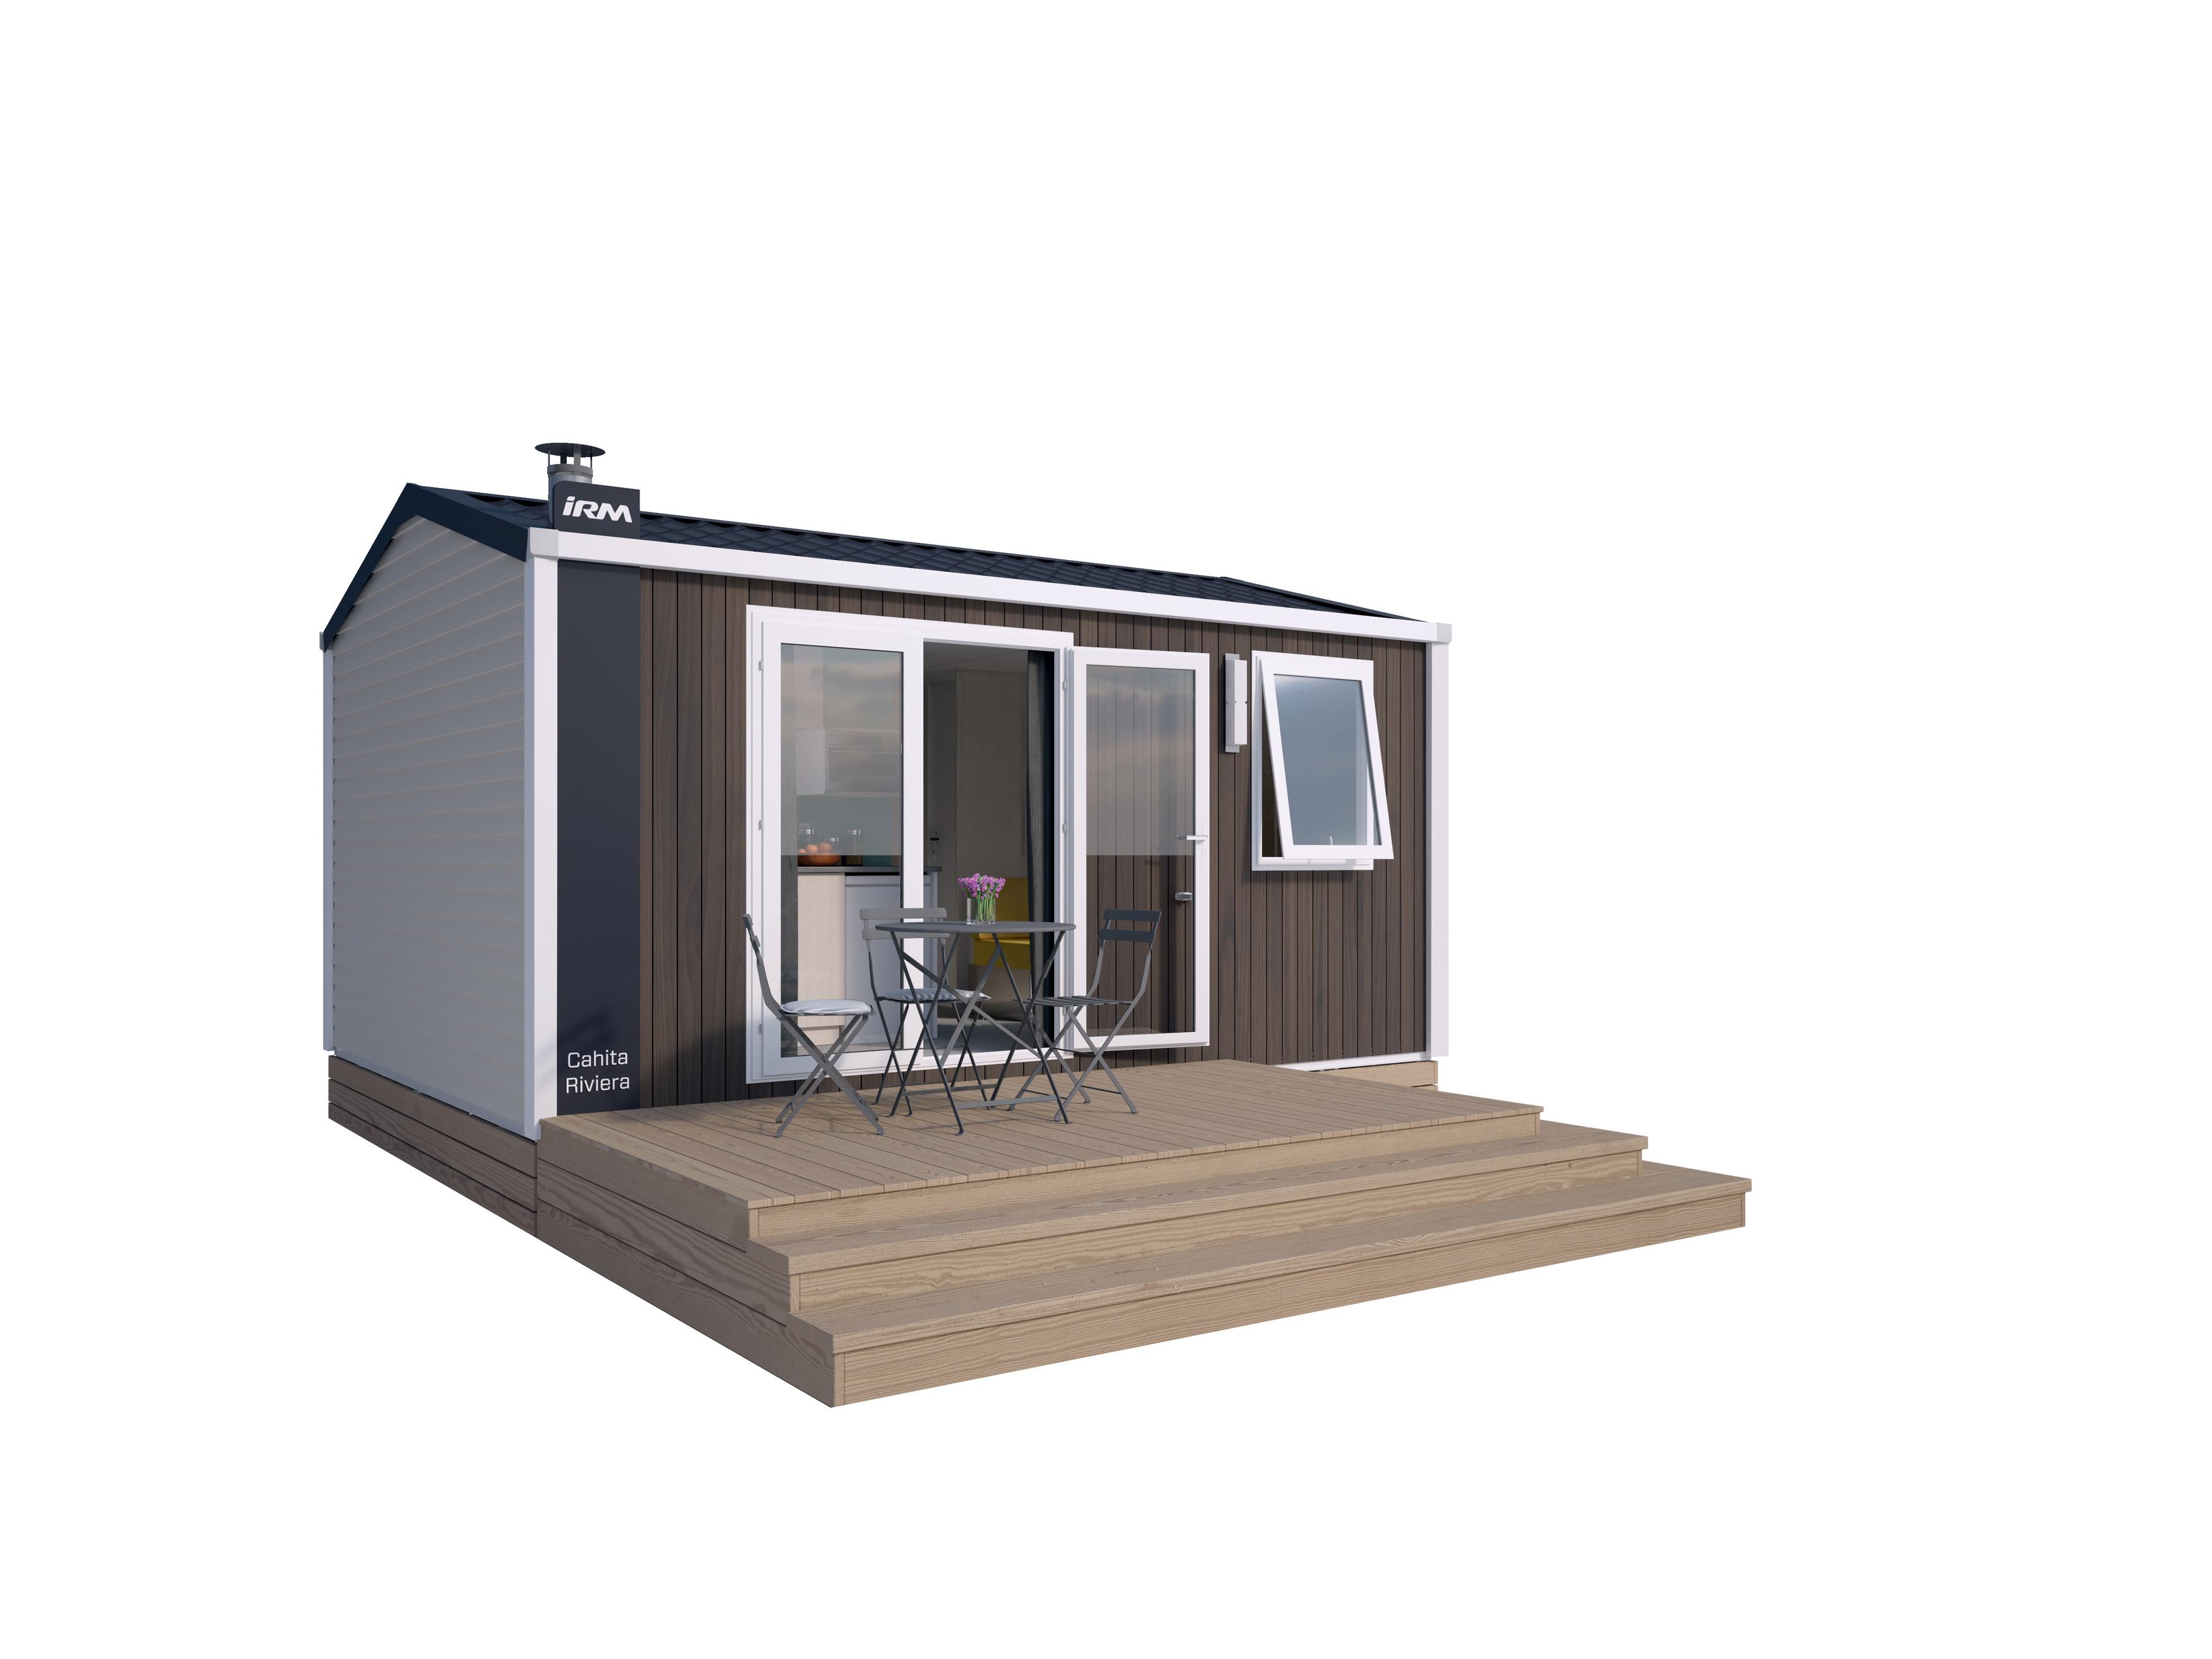 Alojamiento - Mobilhome Cahita Standard 17.8M² (1 Habitacion) - Tv + Terraza - Flower Camping Vitamin